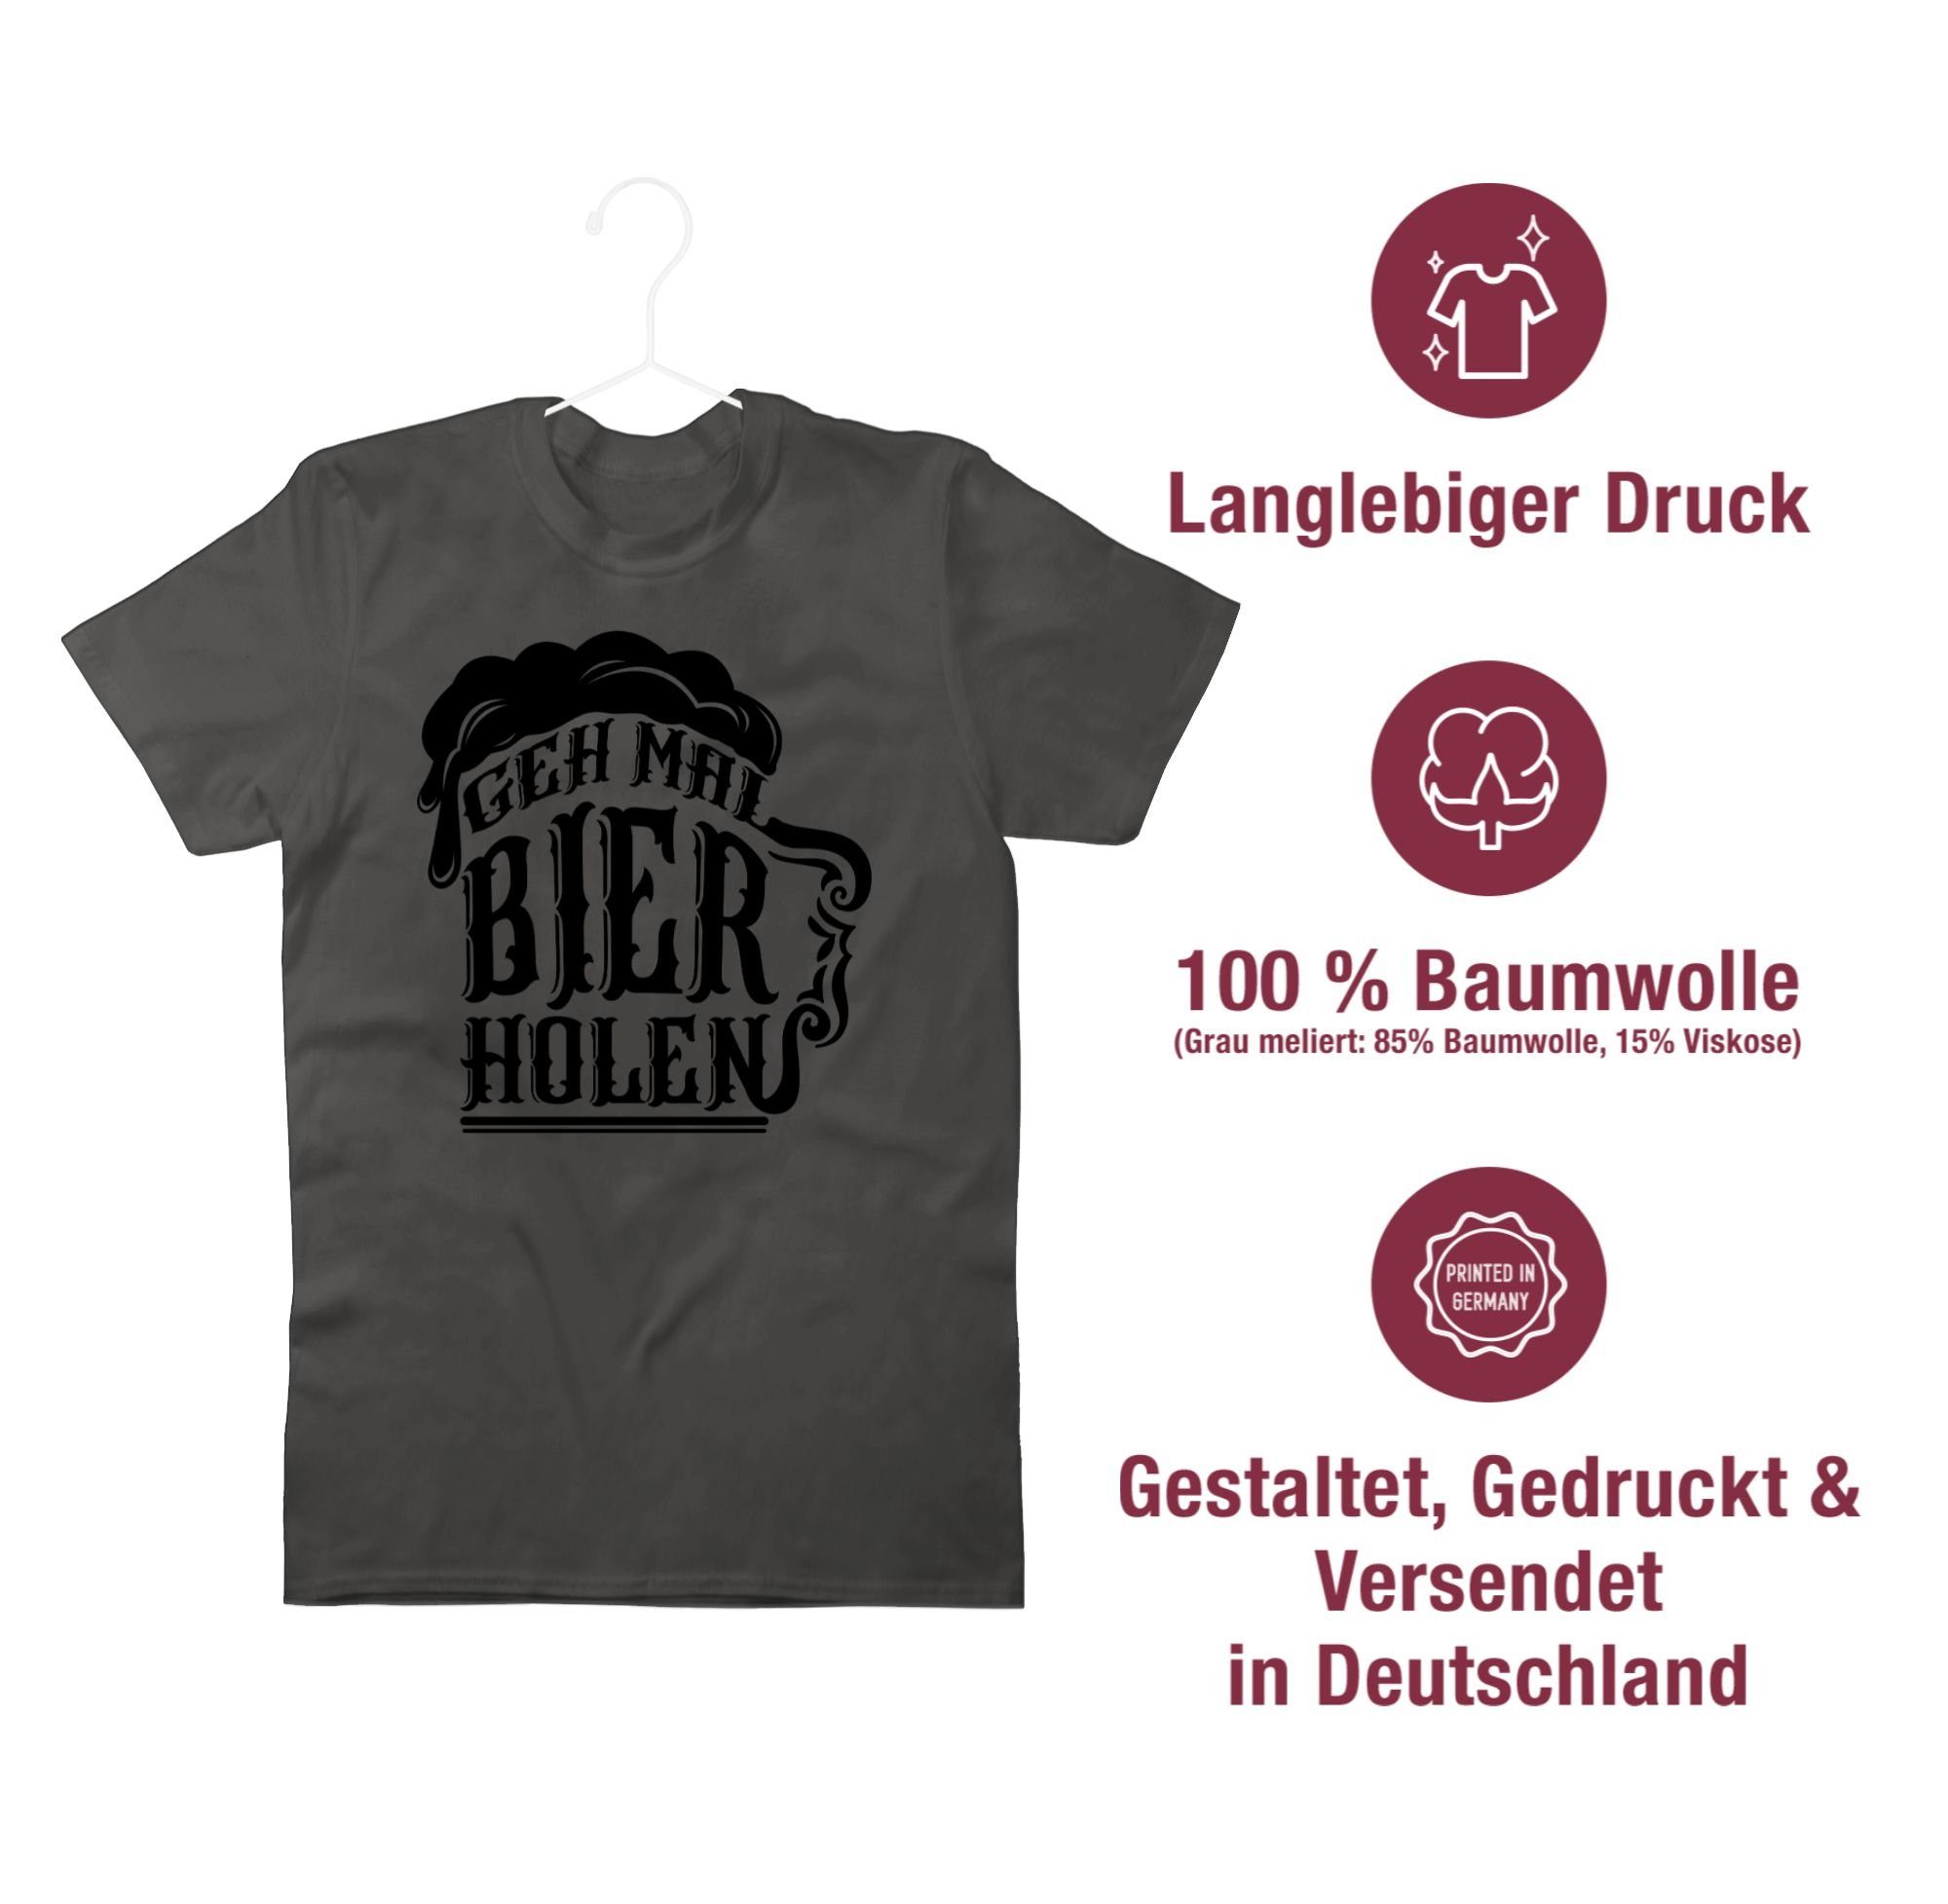 T-Shirt Herren 01 schwarz Party Shirtracer - Alkohol Bier & Dunkelgrau holen Geh mal